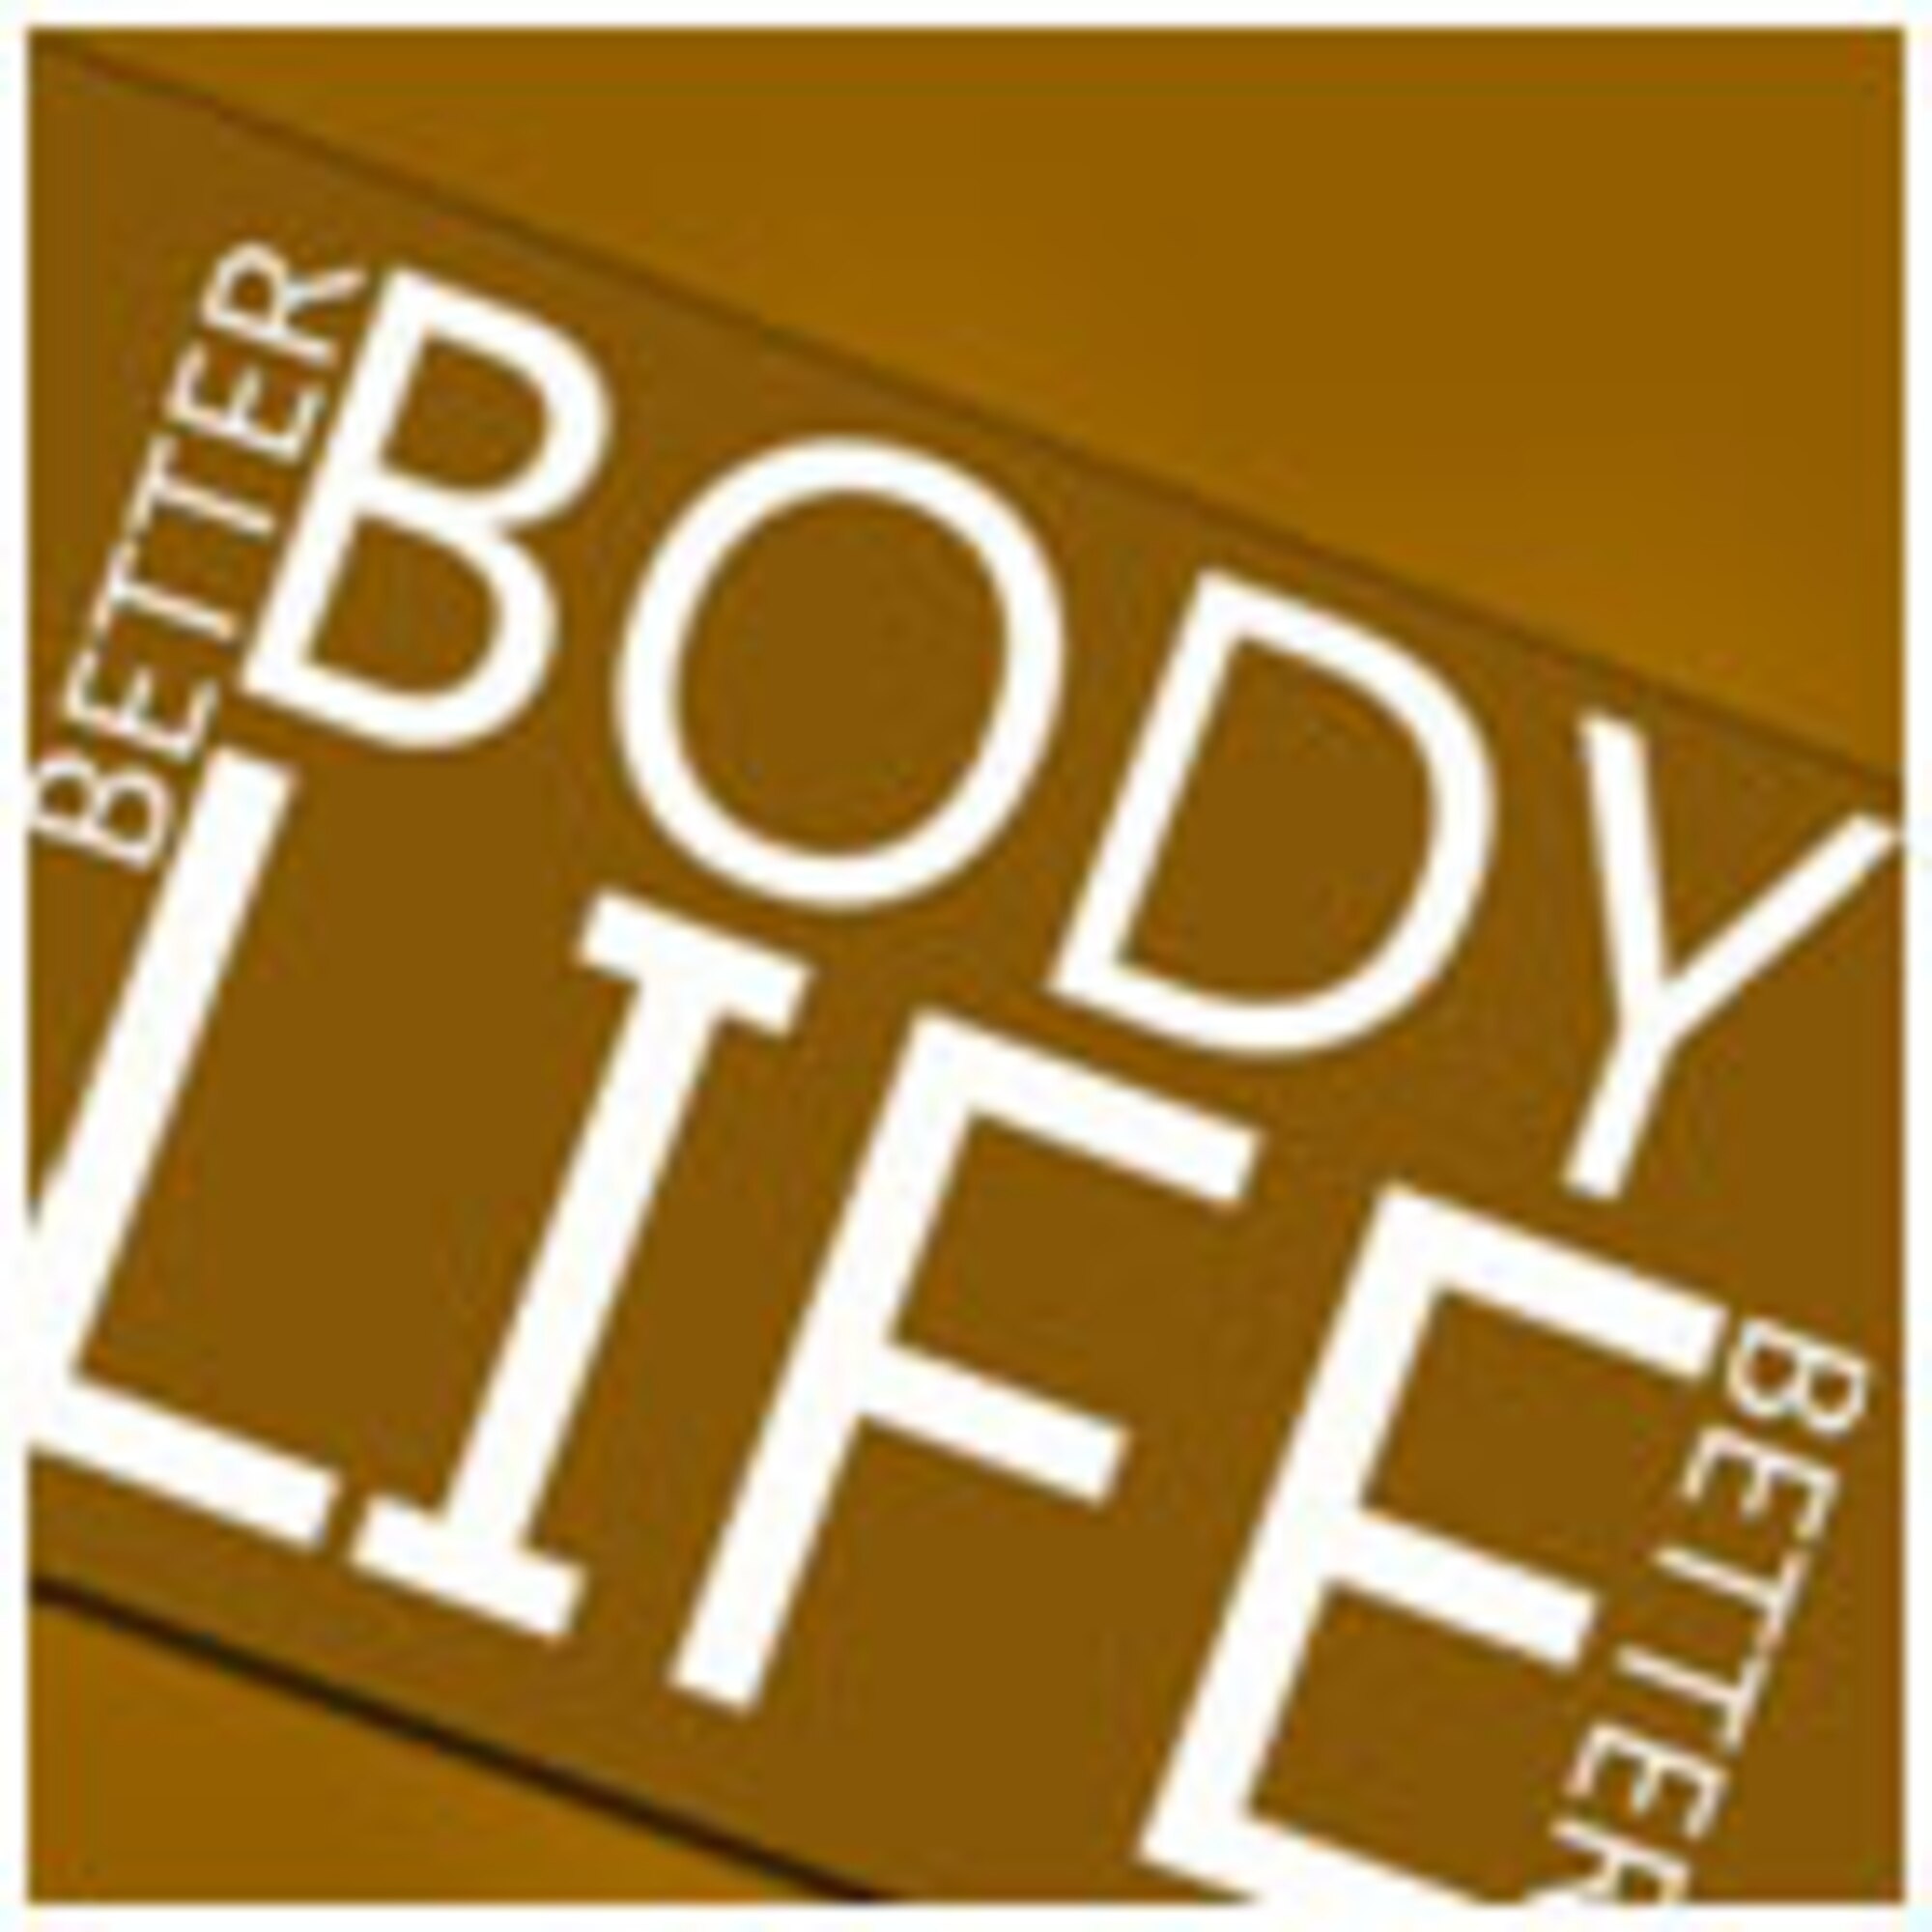 Better Body Better Life